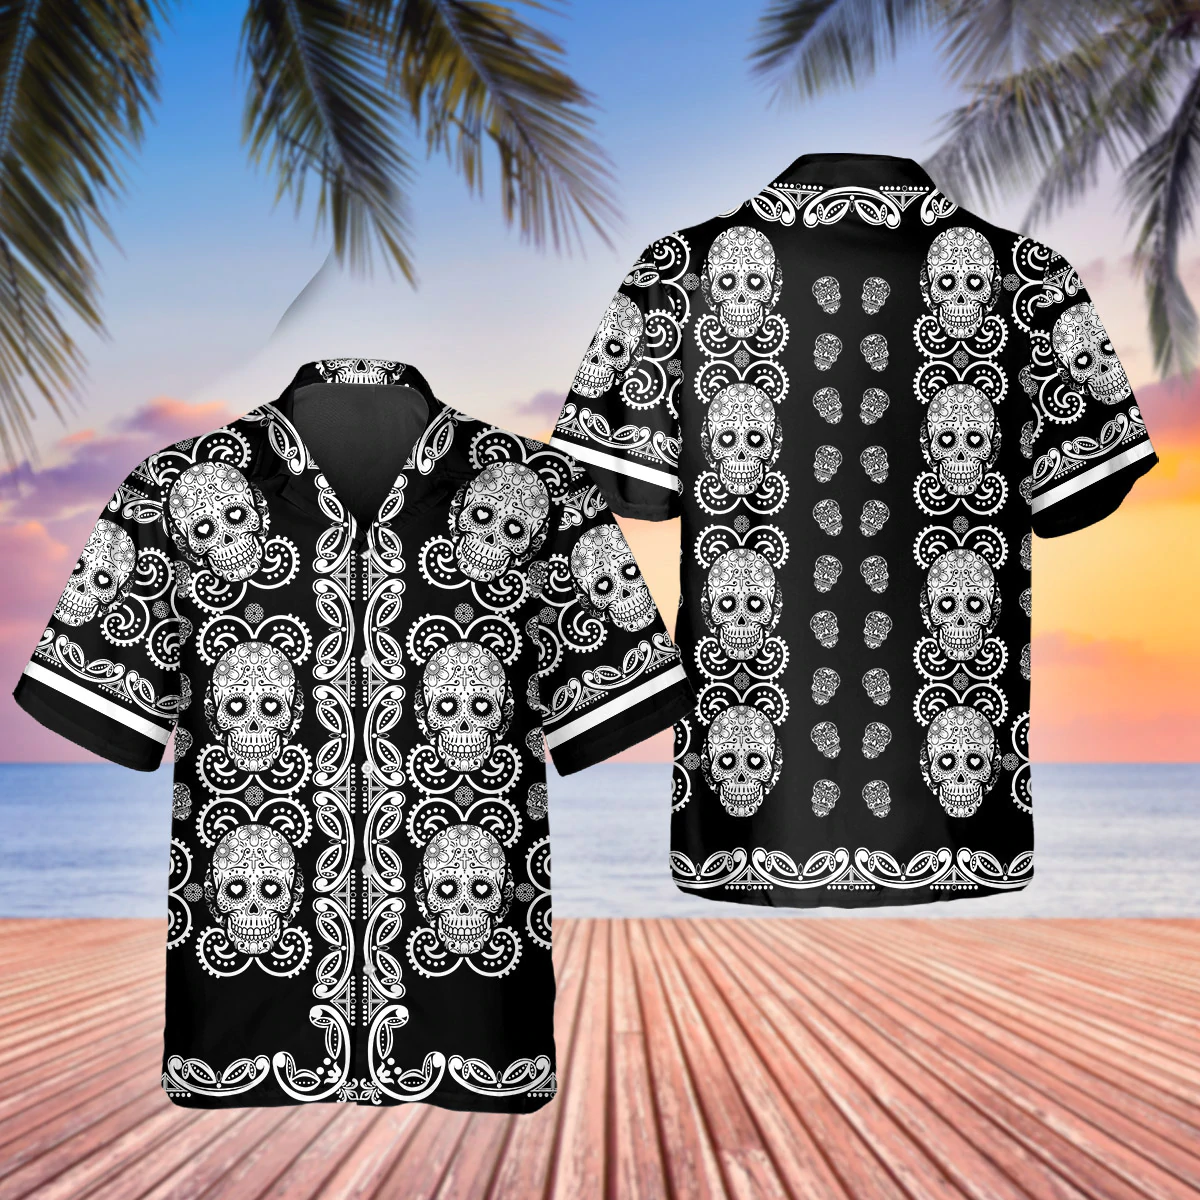 Black And White Skull Roses 3D Hawaiian Shirt For Men/ Skull Hawaiian Aloha Shirt